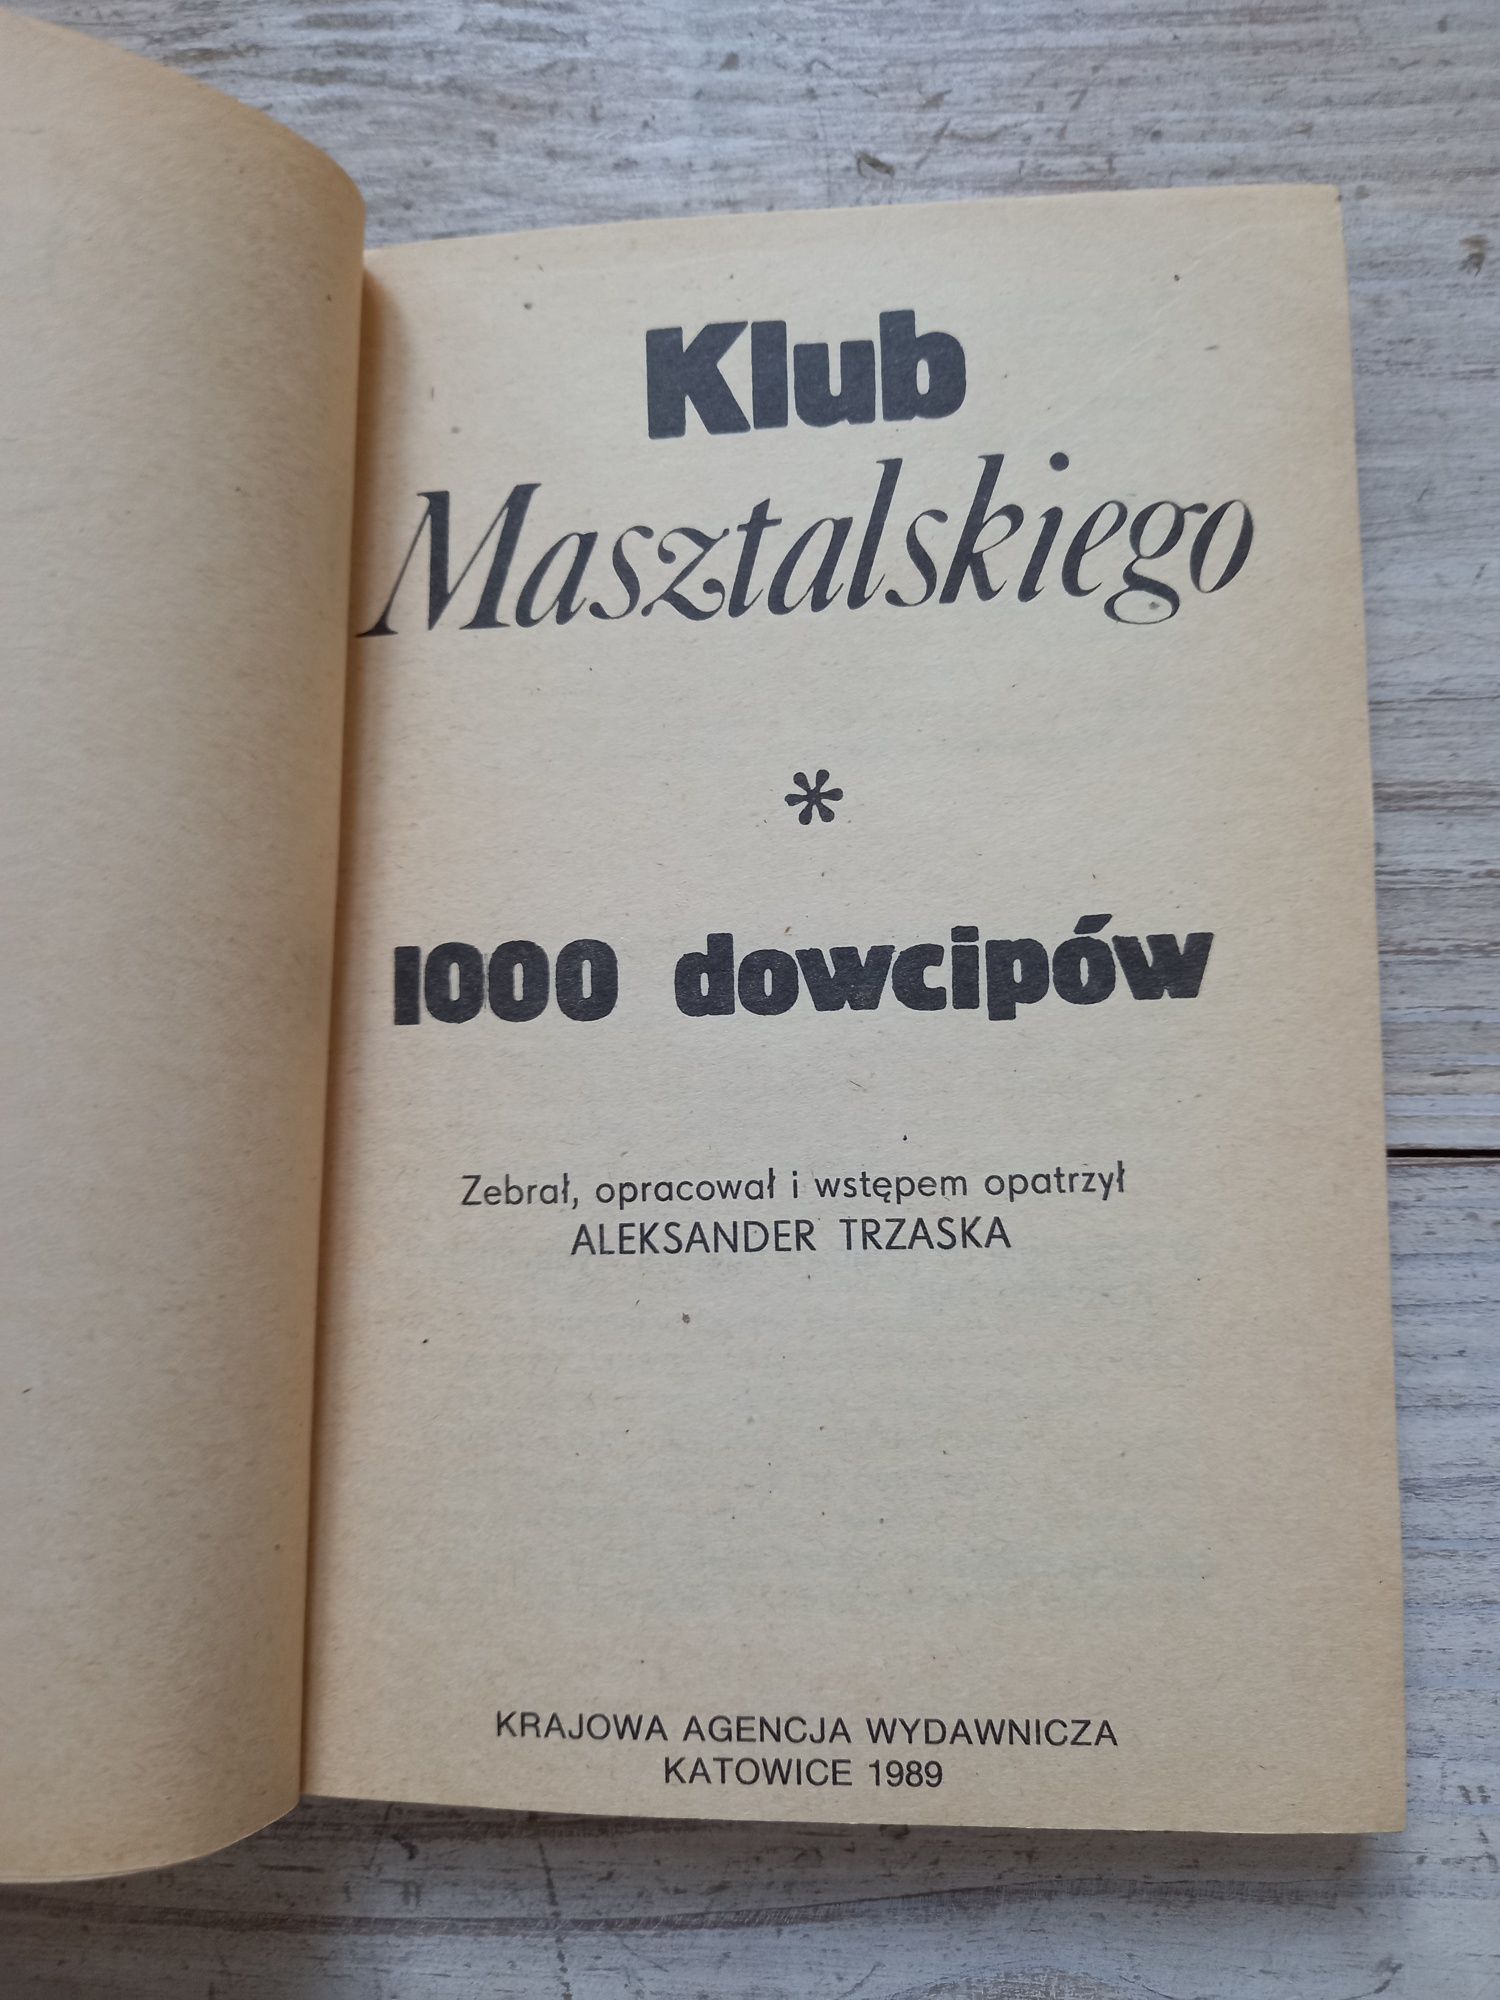 Książka 1000 dowcipów Klub Masztalskiego